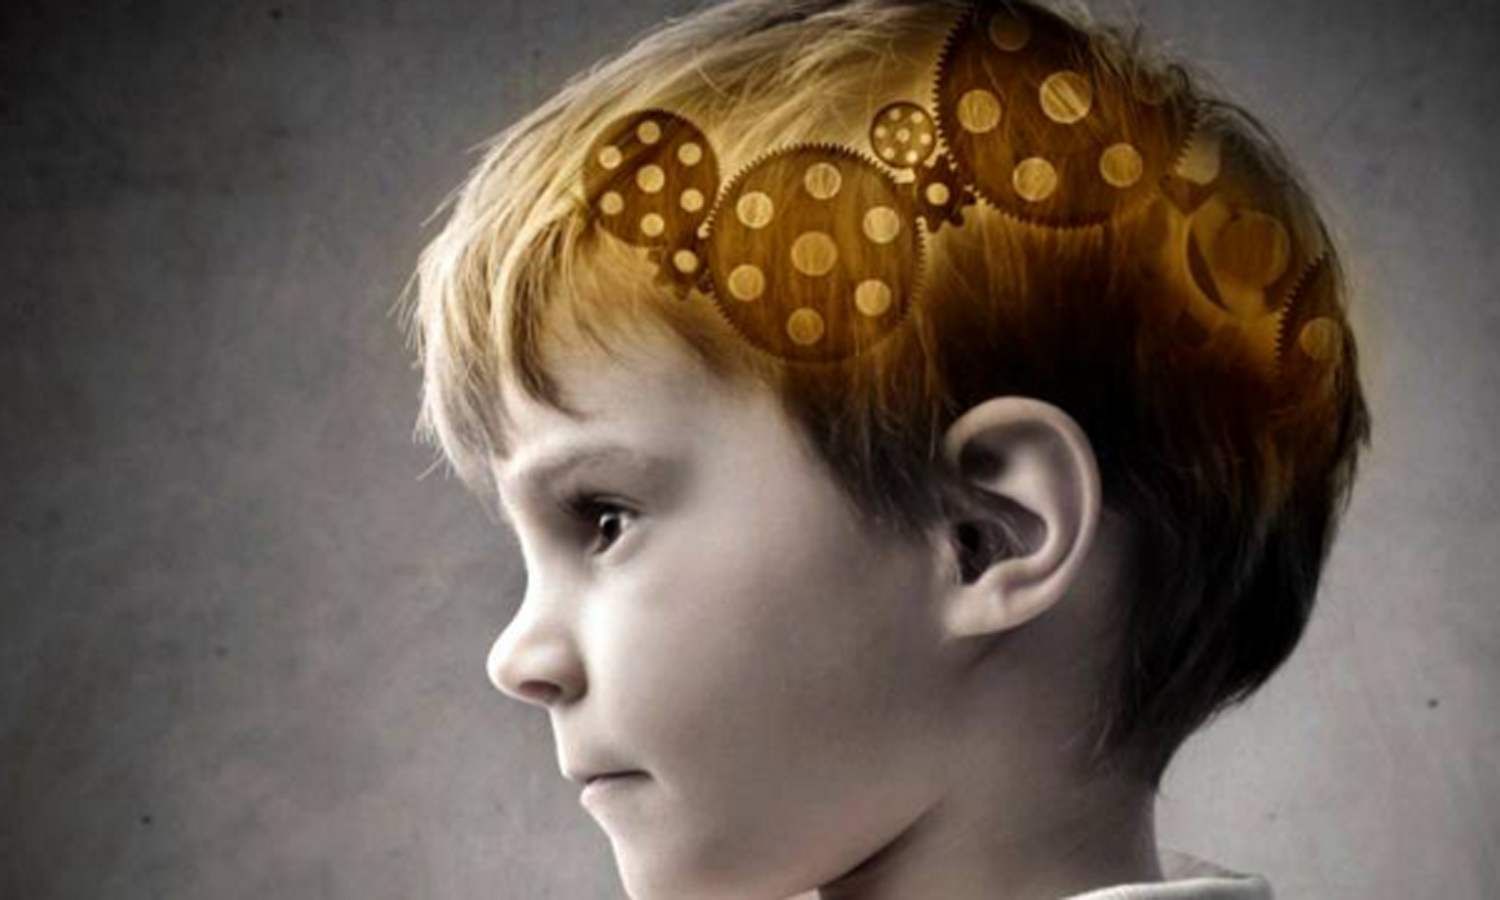 空气负离子可以促进改善儿童智力发育的生理机能